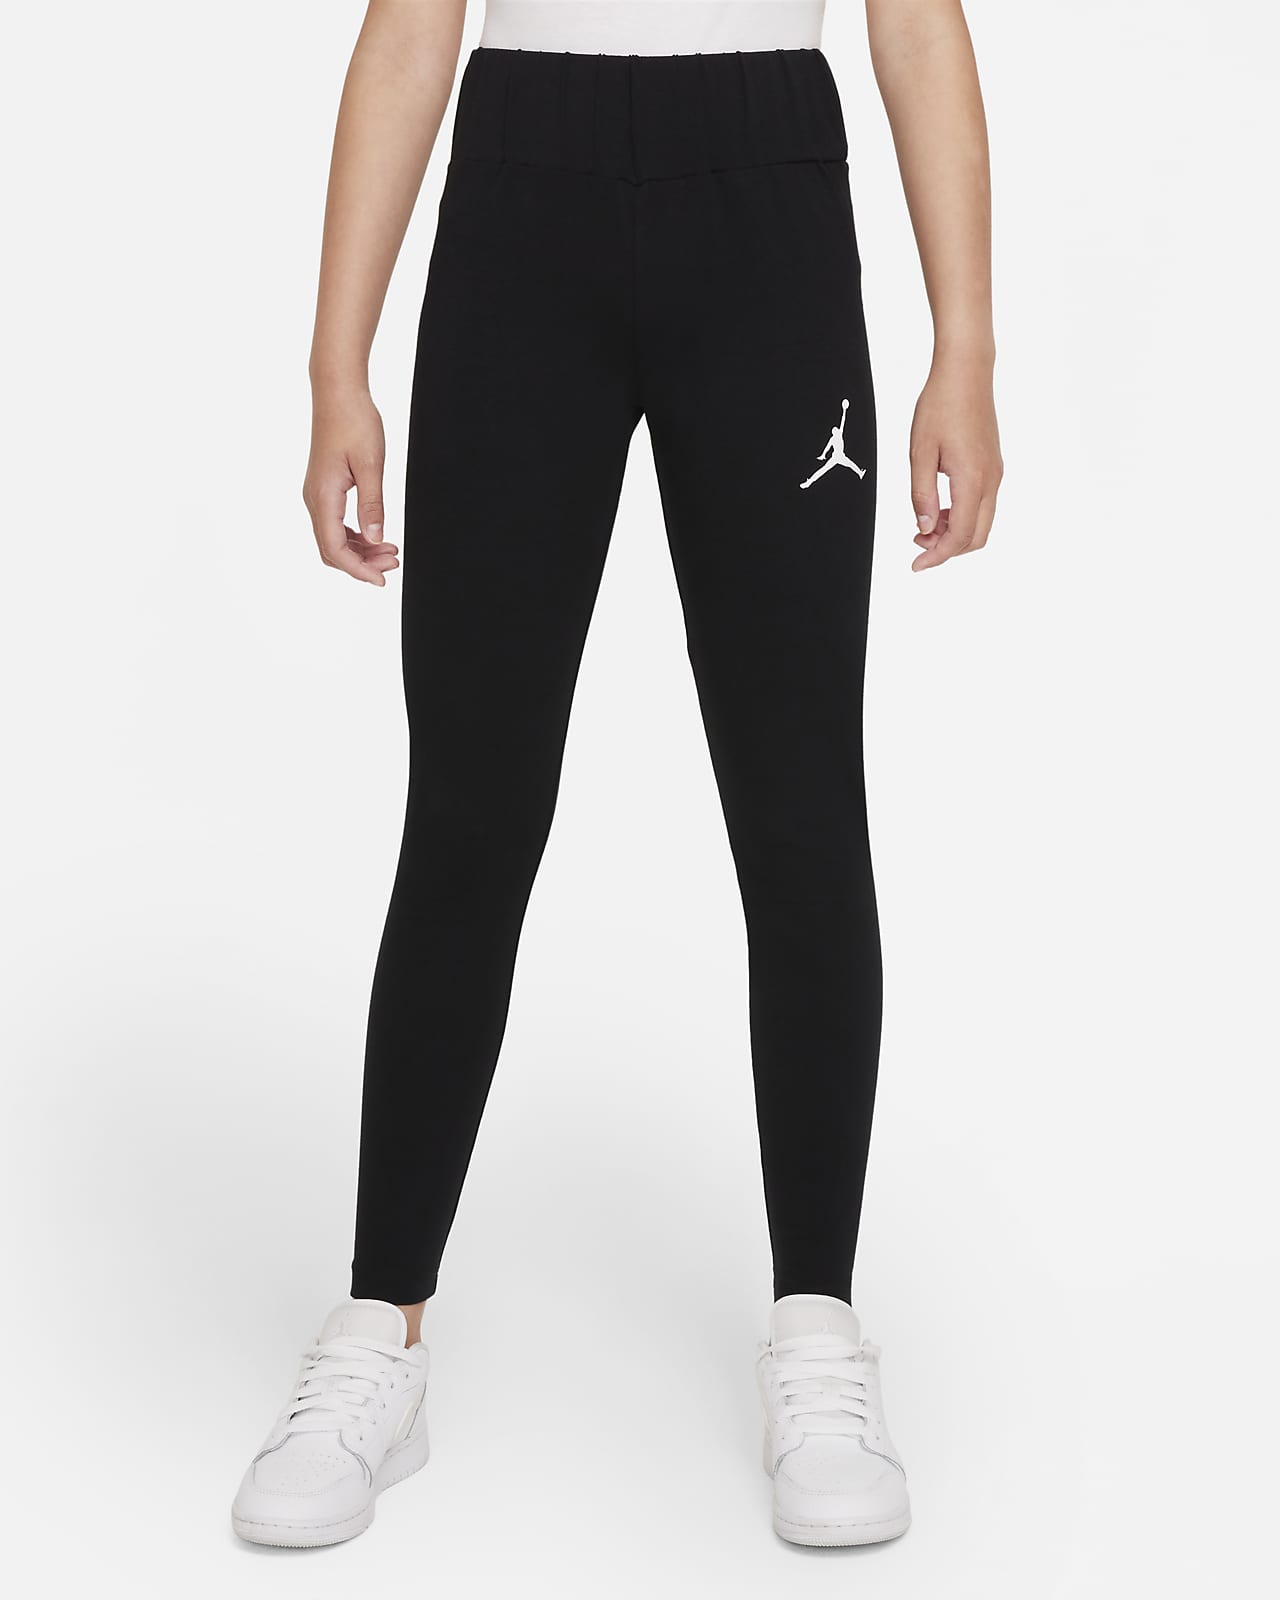 Jordan Tights & Leggings. Nike CA